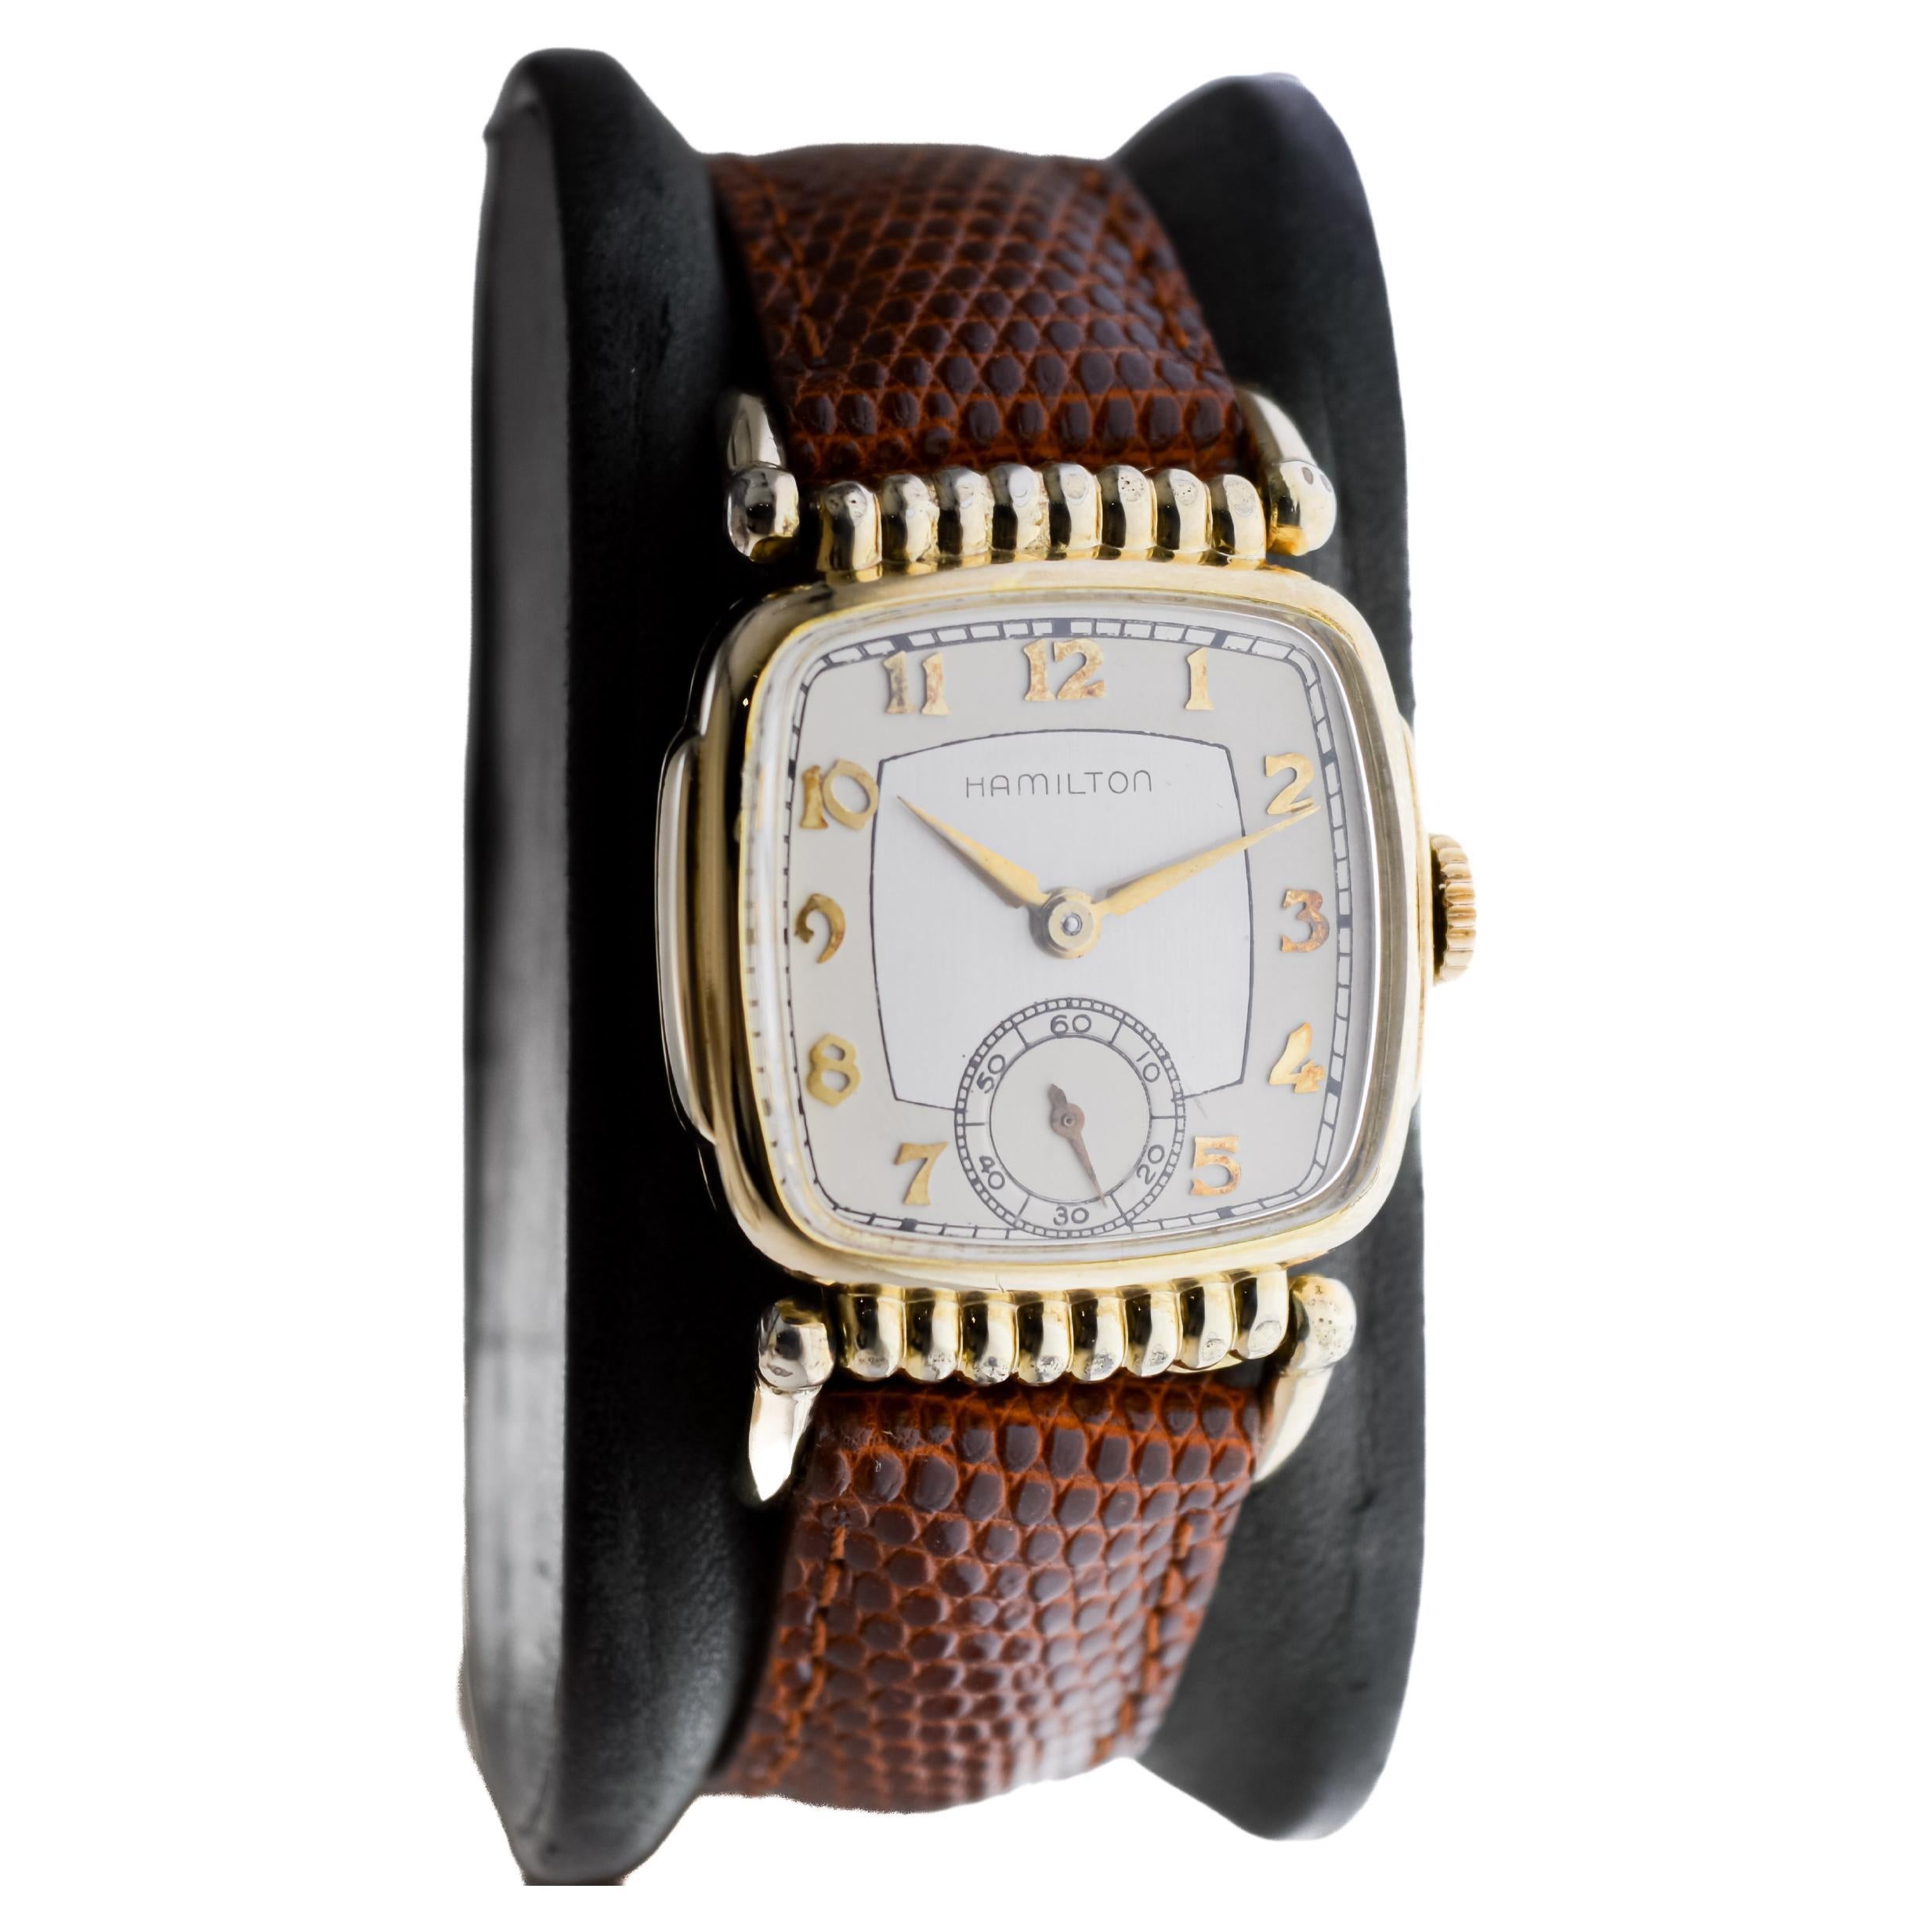 FABRIK / HAUS: Hamilton Watch Company
STIL / REFERENZ: Art Deco / Gliedergehäuse
METALL / MATERIAL: Gelbgold-Füllung
CIRCA / JAHR: 1940er Jahre
ABMESSUNGEN / GRÖSSE: Länge 51mm X Breite 27mm
UHRWERK / KALIBER: Handaufzug / 17 Jewels / Kaliber